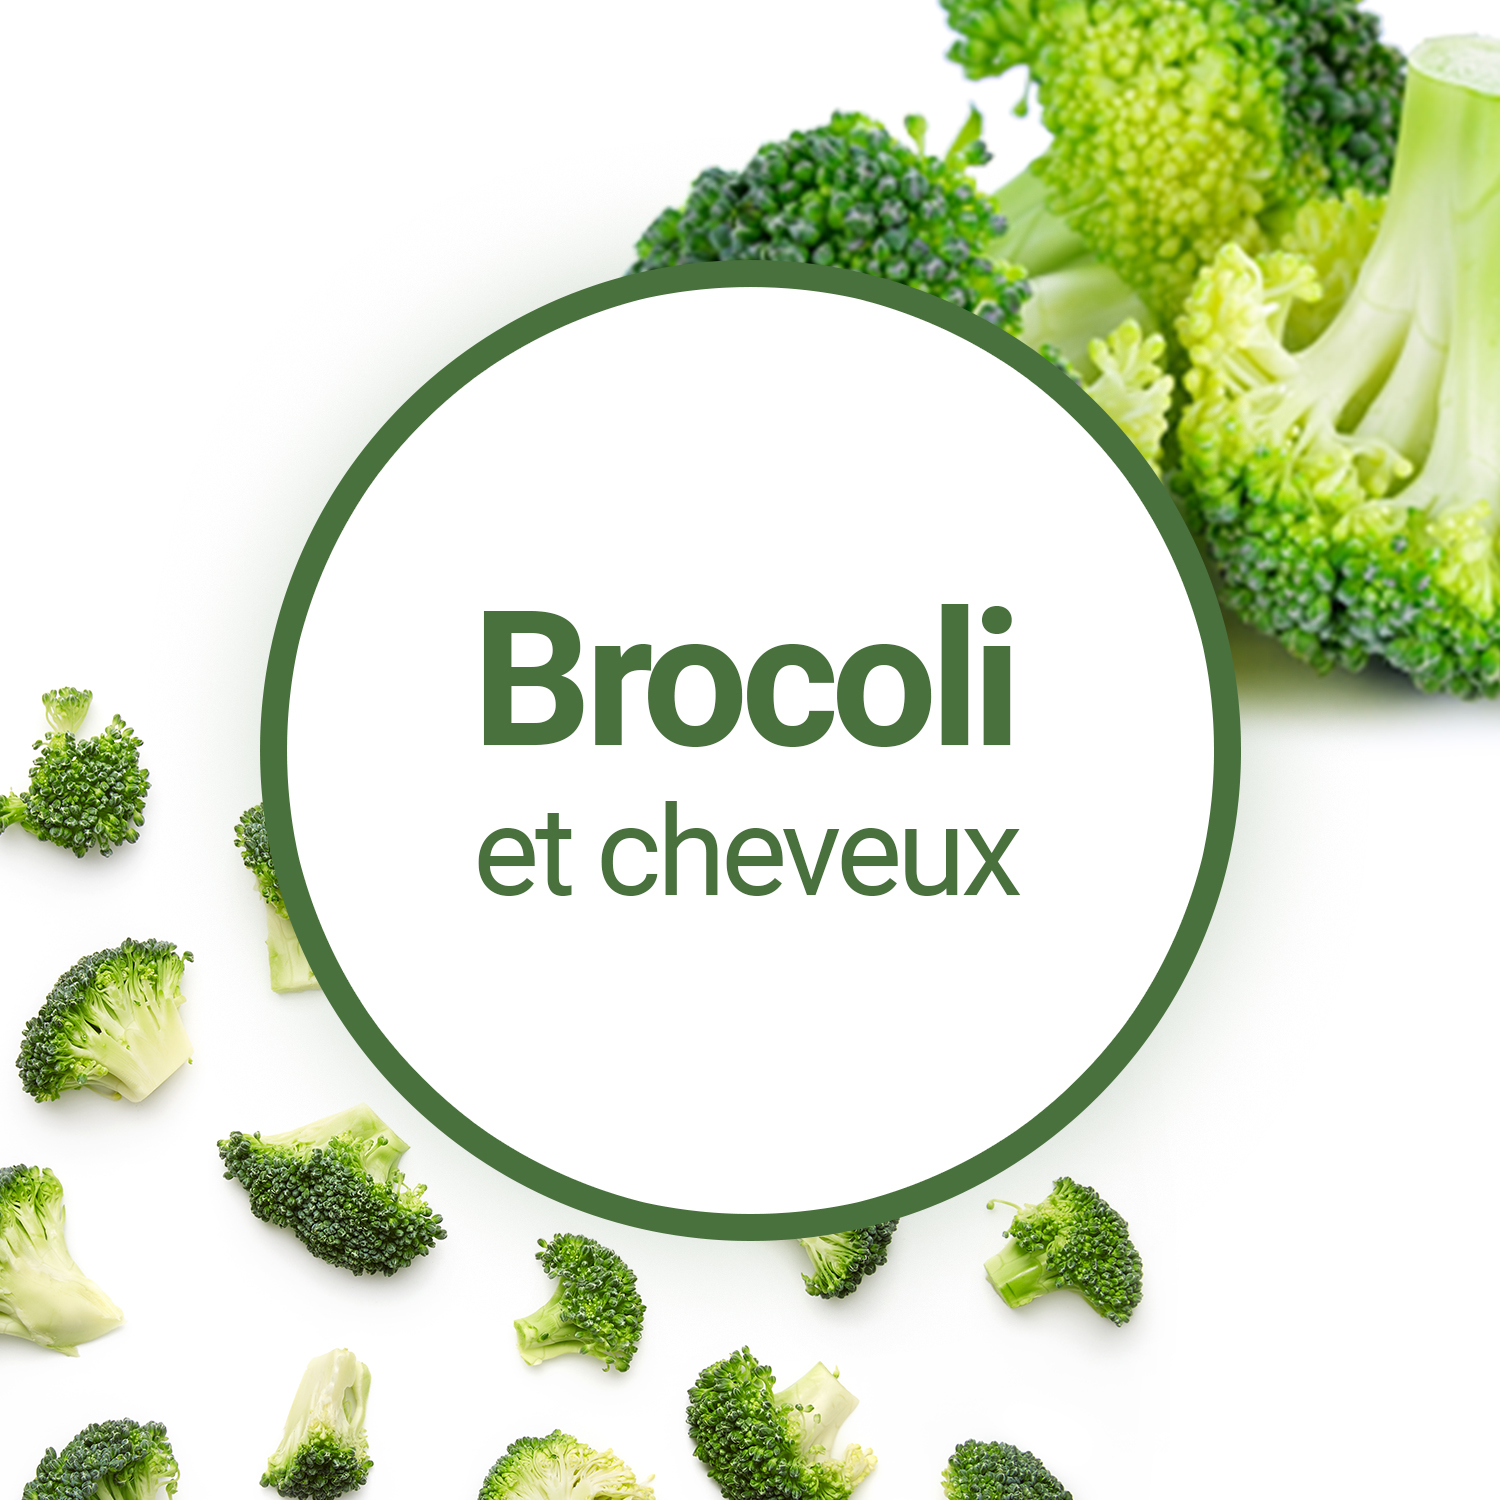 Les bienfaits de l'huile de brocoli - Je cosmétique